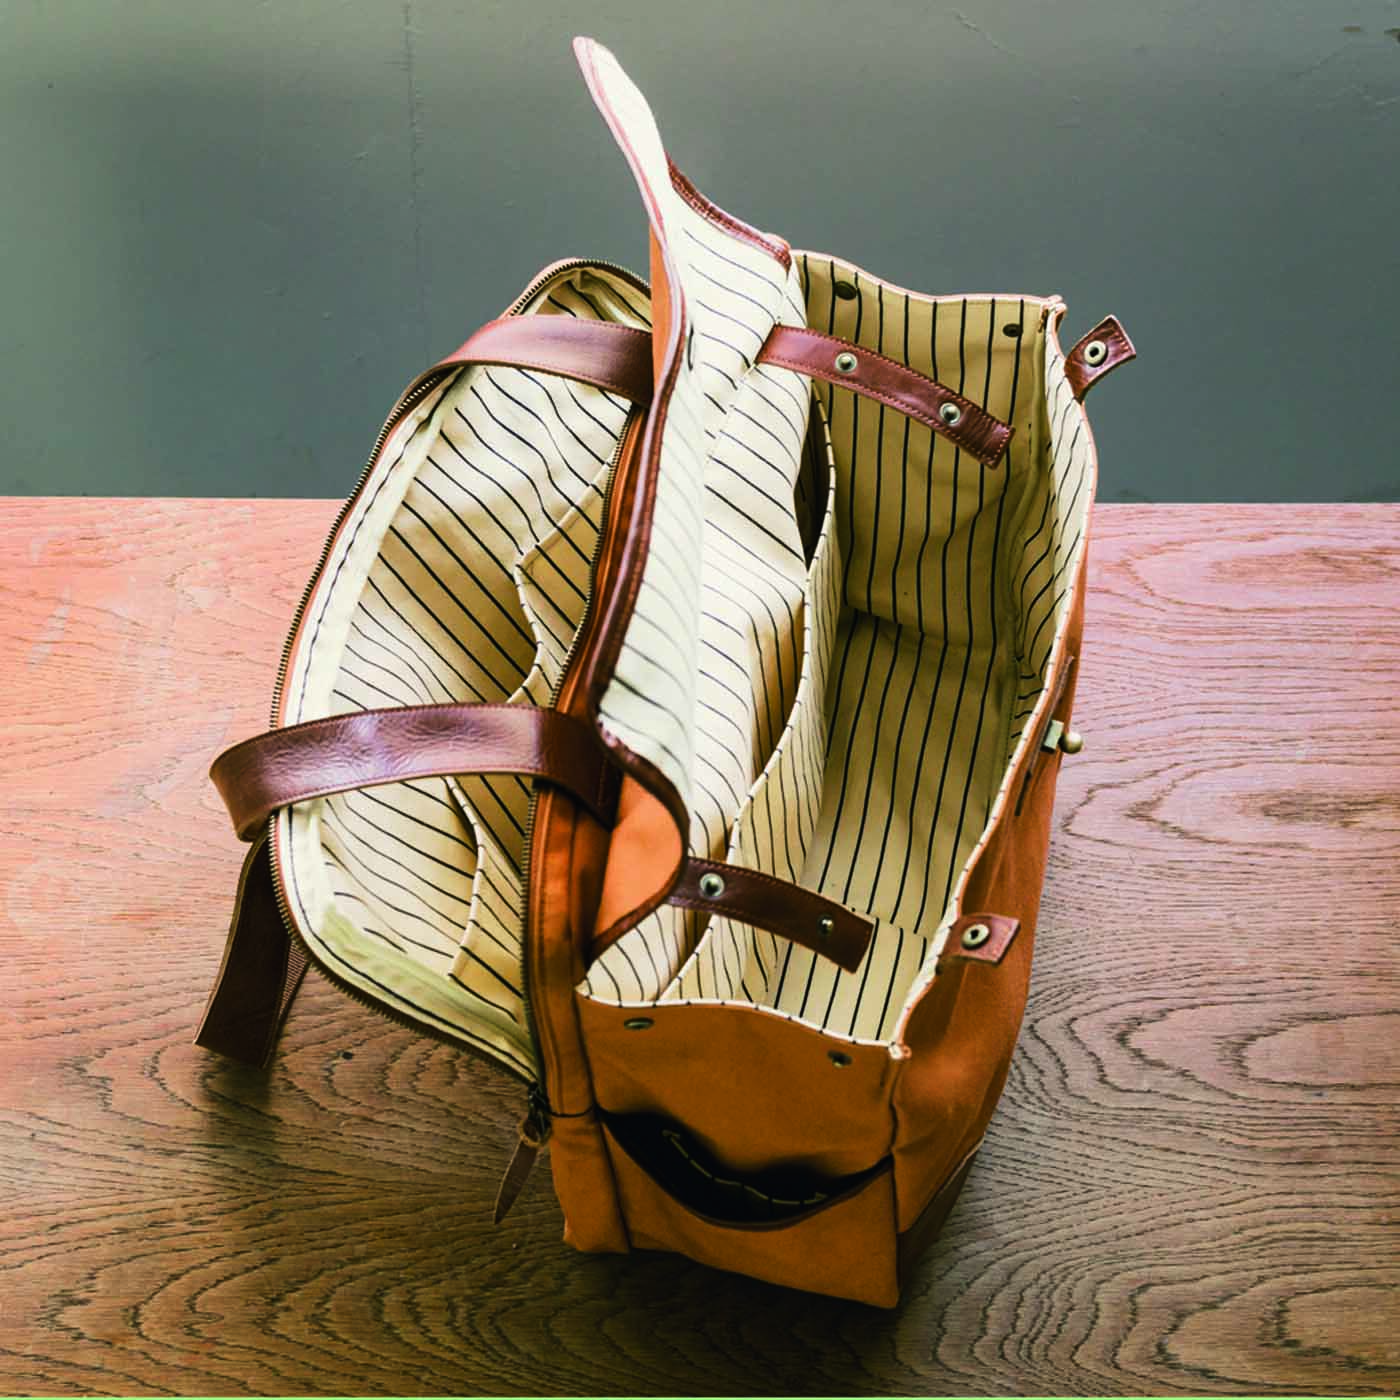 ＆Stories|アートディレクターと作った 職人帆布と本革遣いのトラベルバッグ〈ヴィンテージキャメル〉|ブリーフバッグとボストンバッグが合体したような2室仕様。